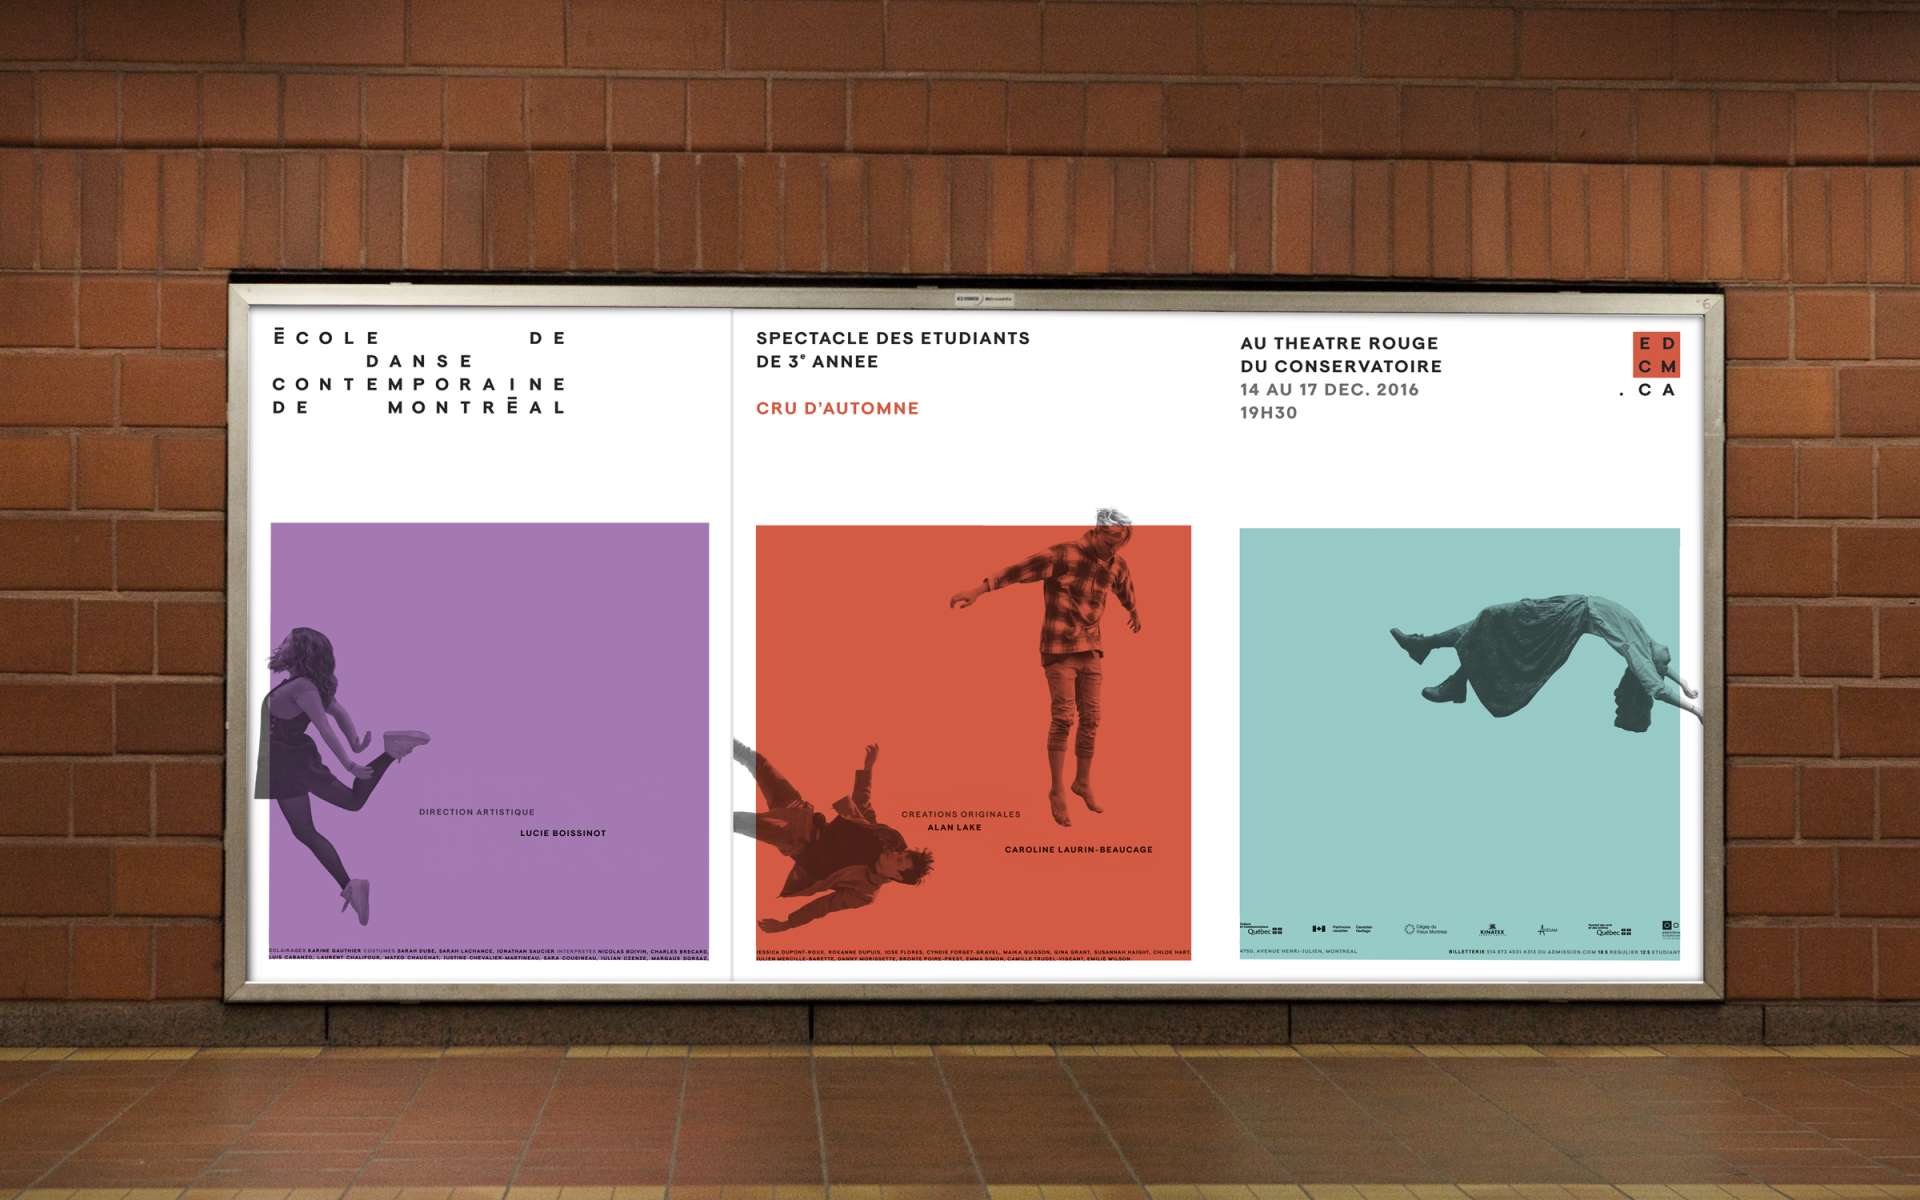 École de danse contemporaine de Montréal - Refonte de l'identité visuelle et campagne d'affichage